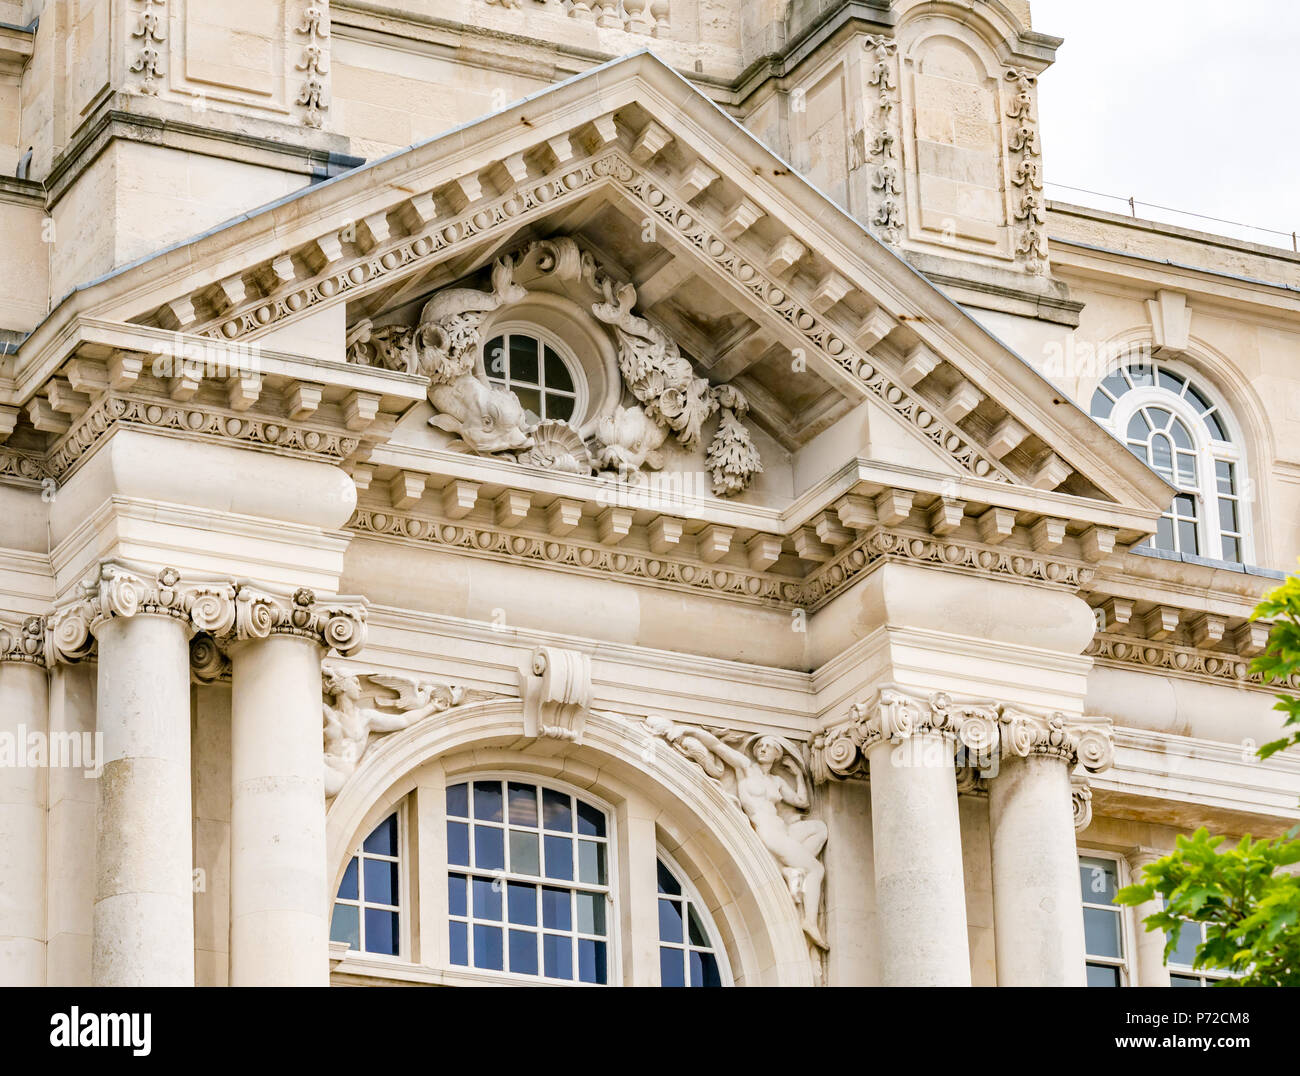 Reich verzierte Fenster Architrav, Hafen von Liverpool Edwardian Baroque building, Liverpool, England, UK Stockfoto